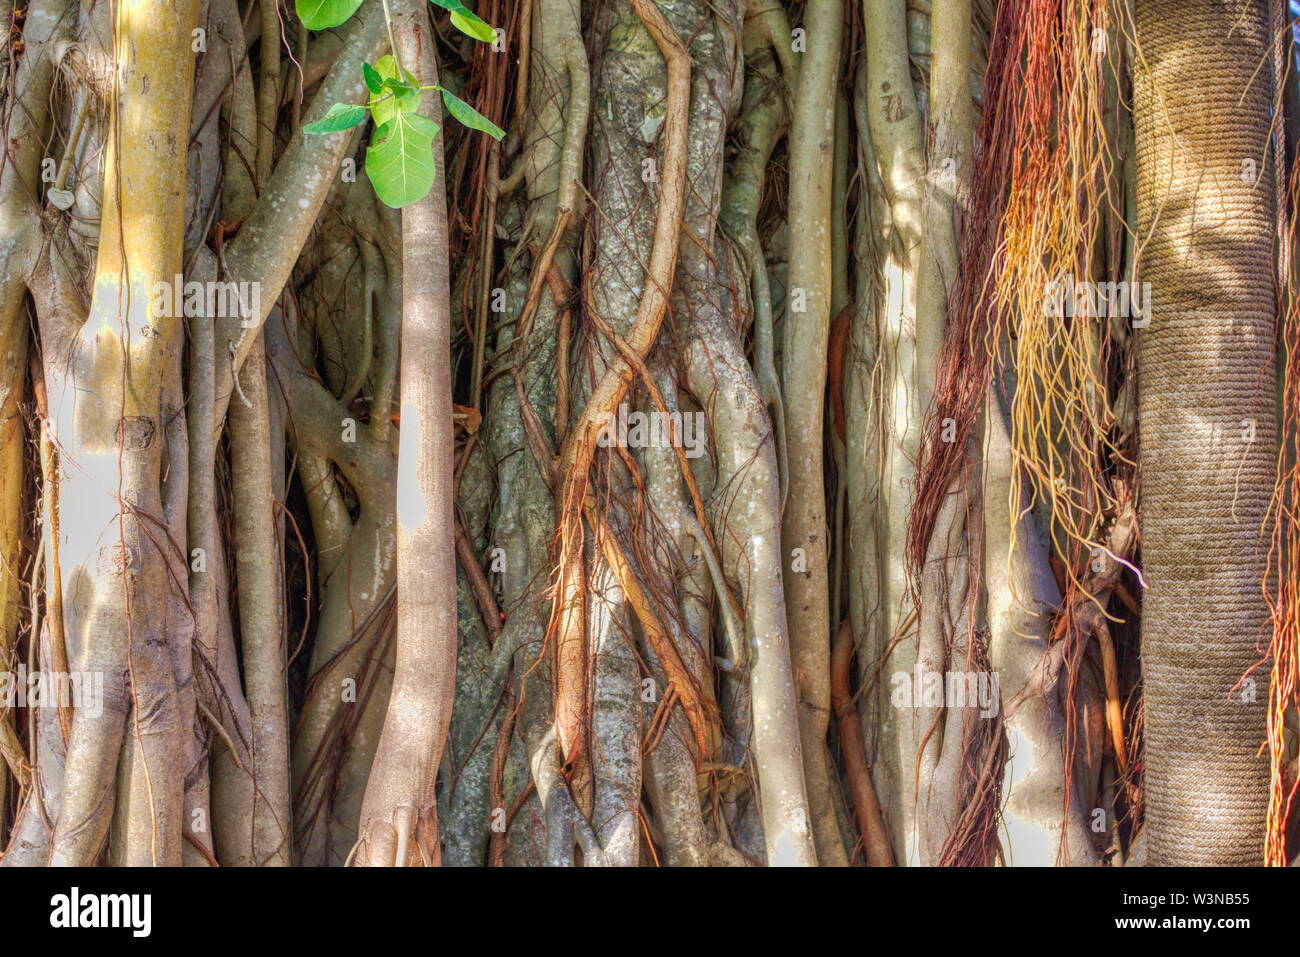 Dieses einzigartige Foto zeigt einen alten Baum Stamm eines riesigen alten Baum. Sie können auch die Lianen. Dieses Bild wurde auf den Malediven genommen Stockfoto